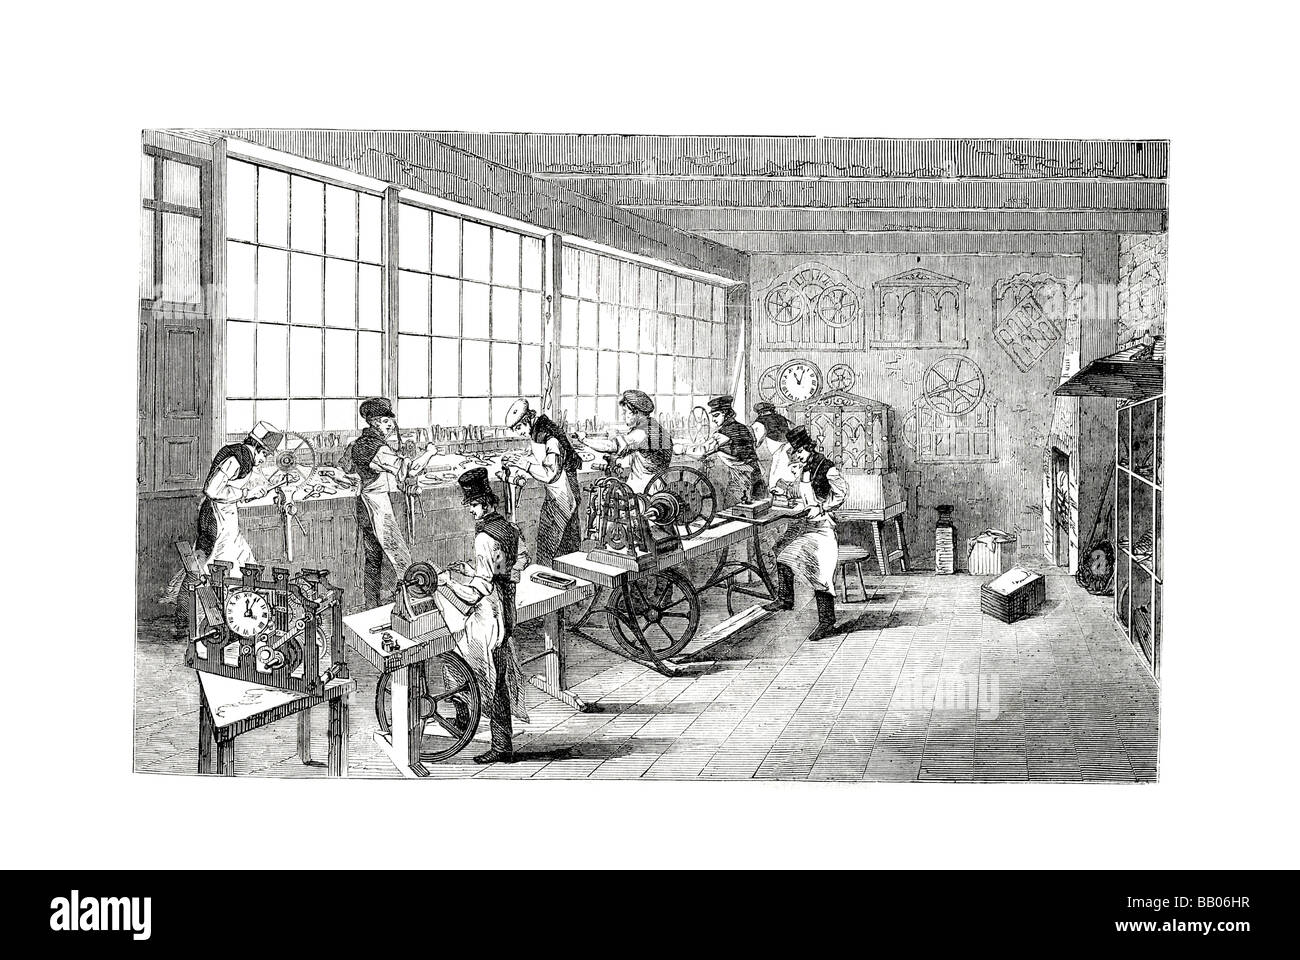 La tourelle réveil shop oeuvre industrielle machines Machines de travailleurs de l'industrie de l'habillement traditionnel robe période Banque D'Images